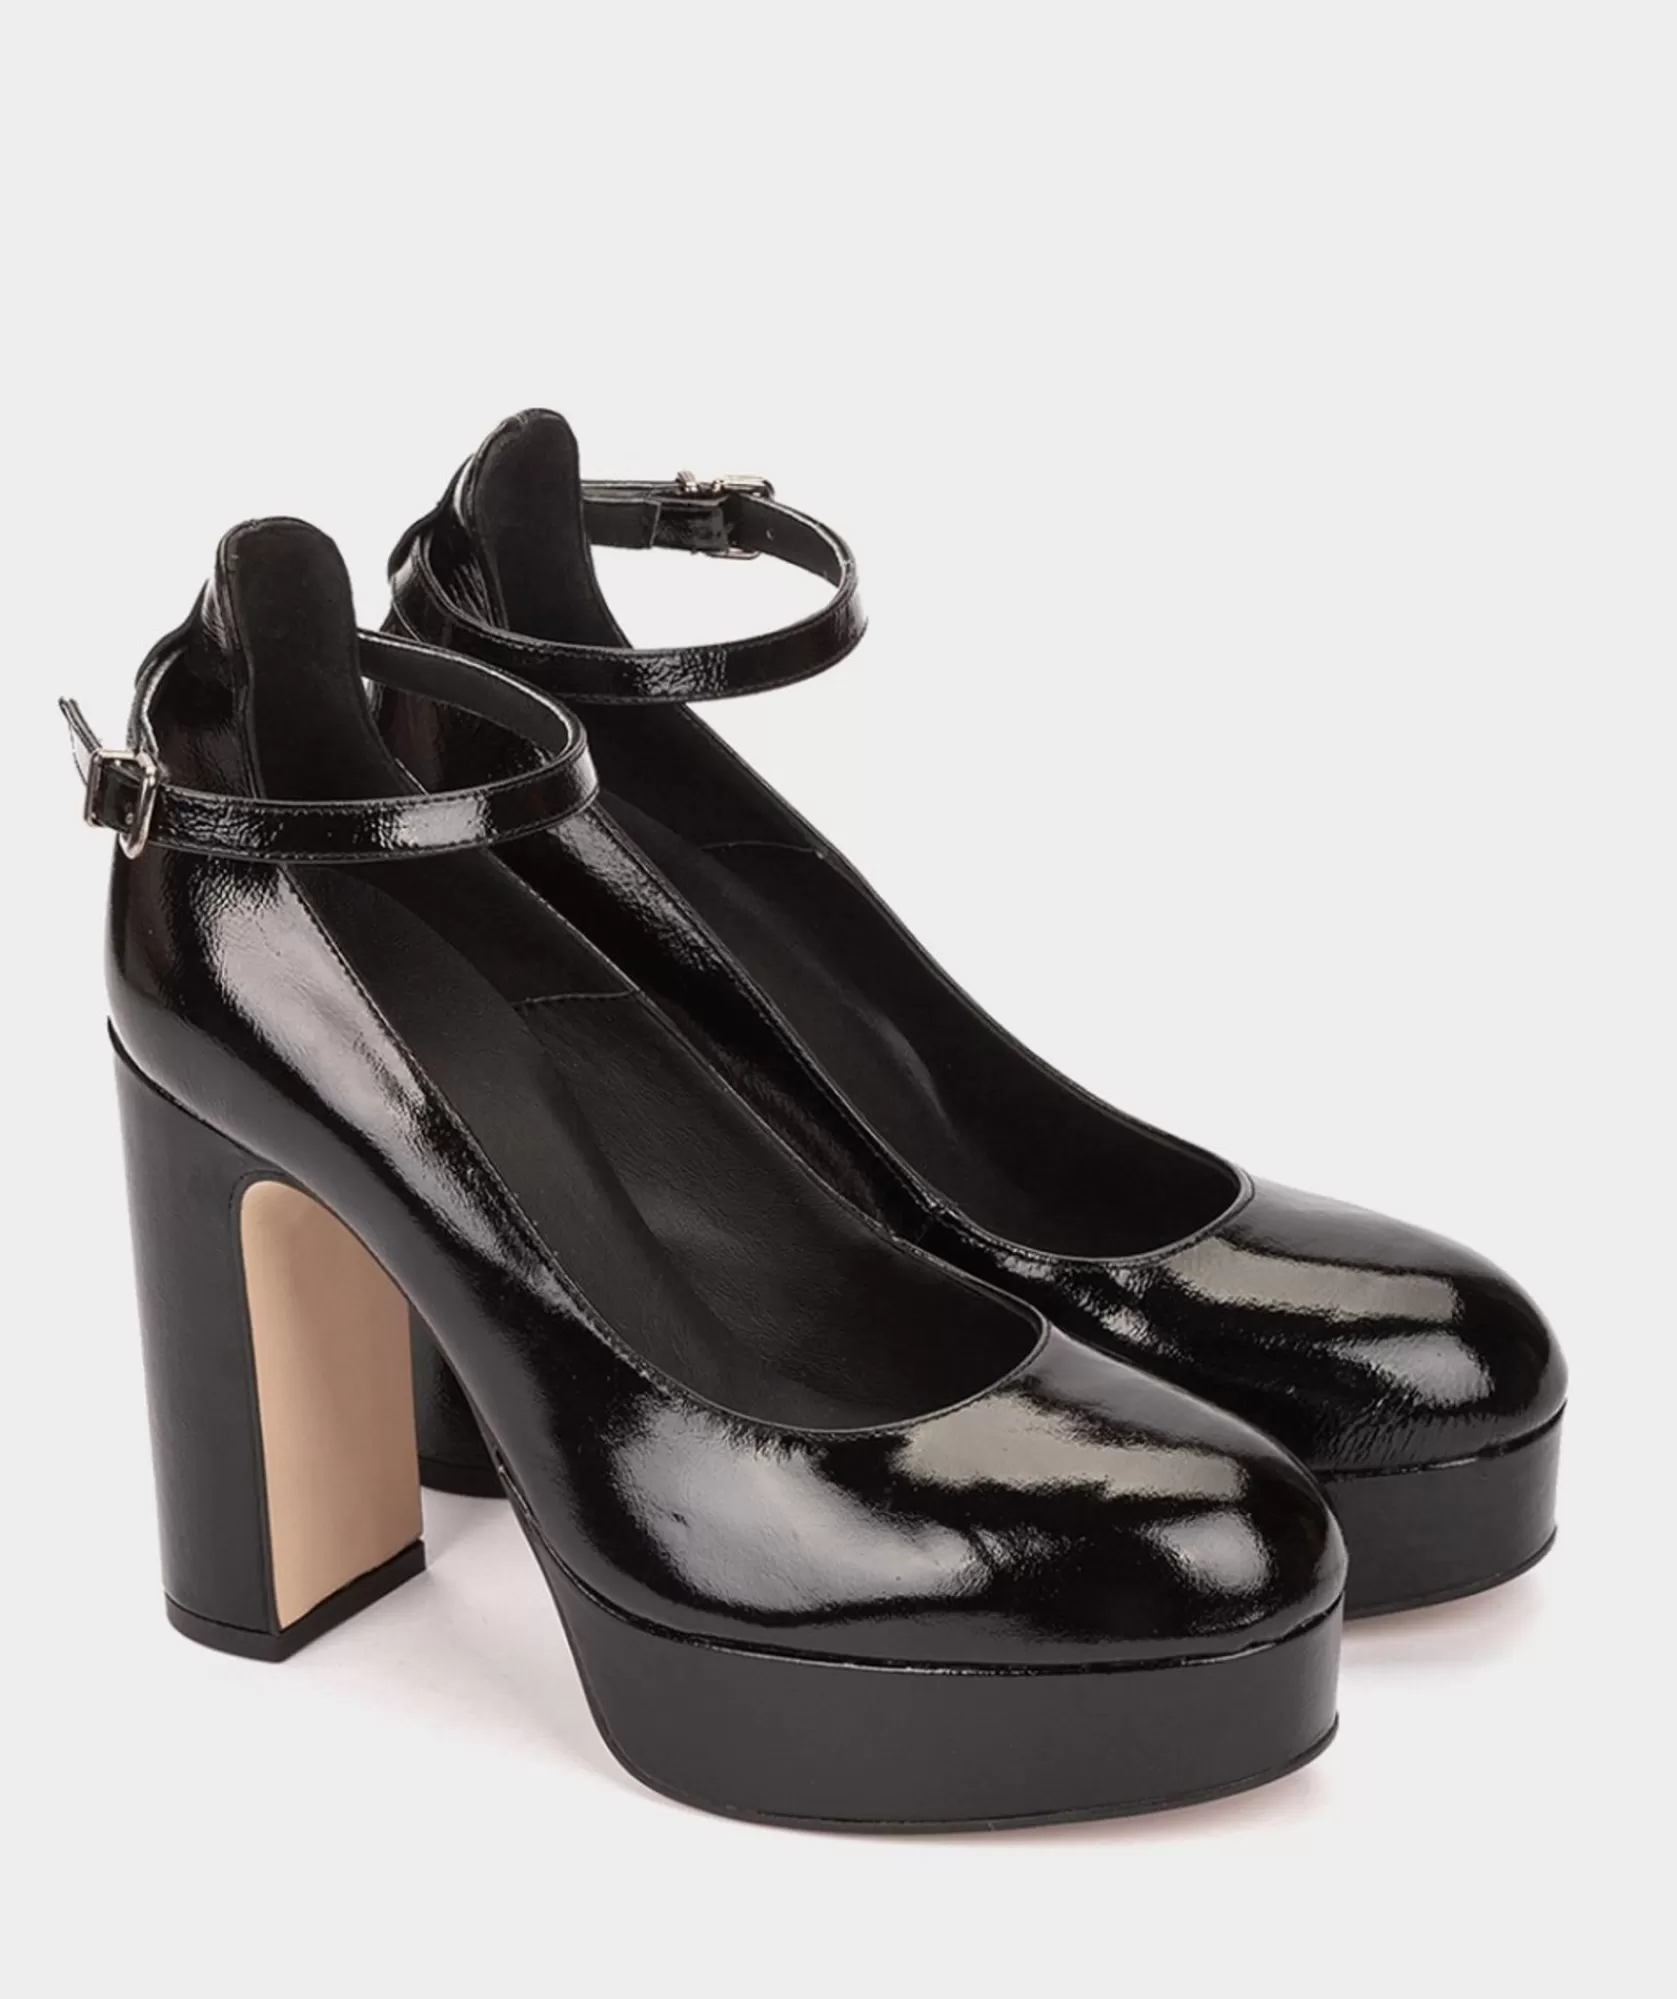 Calzado Pedro Miralles Zapatos De Tacon Con Plataforma Confeccionados En Charol De Color Negro Reflex Negro